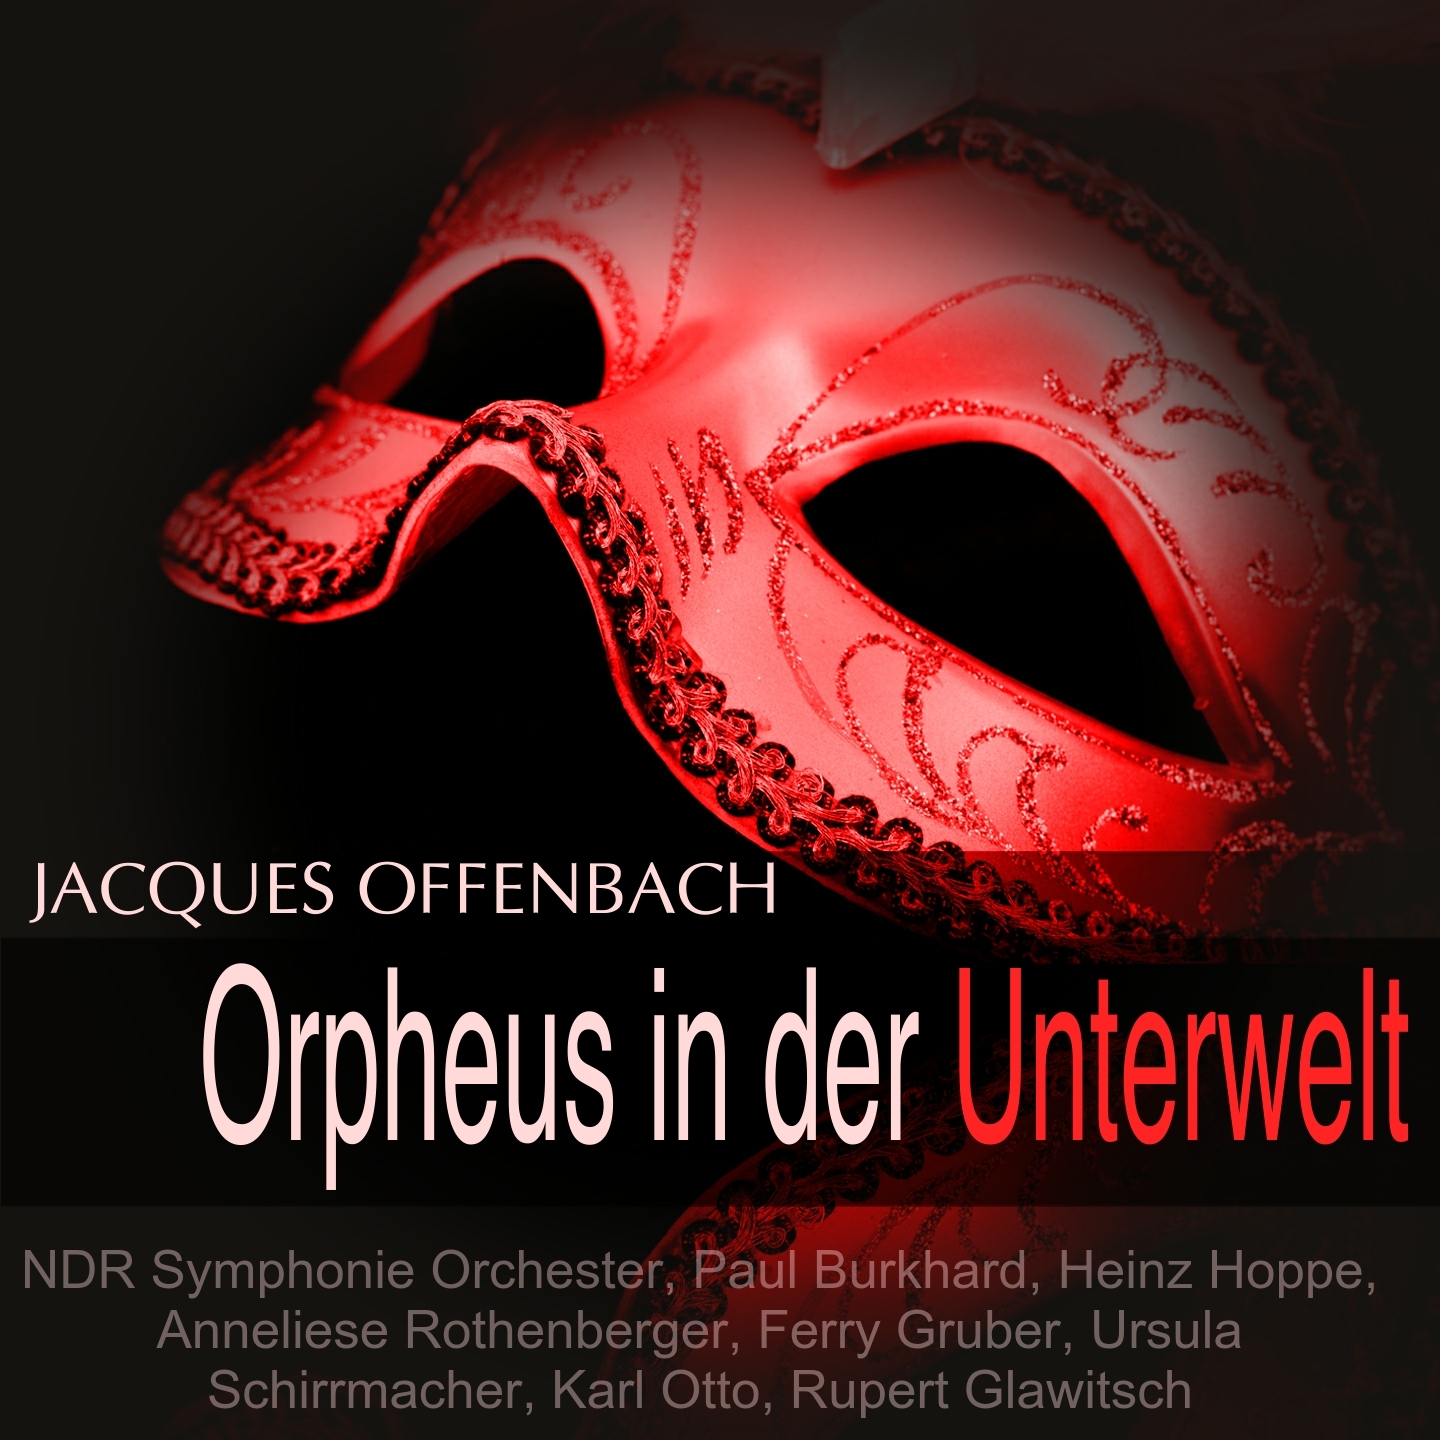 Orpheus in der Unterwelt: Dialog 3 (Eurydike)